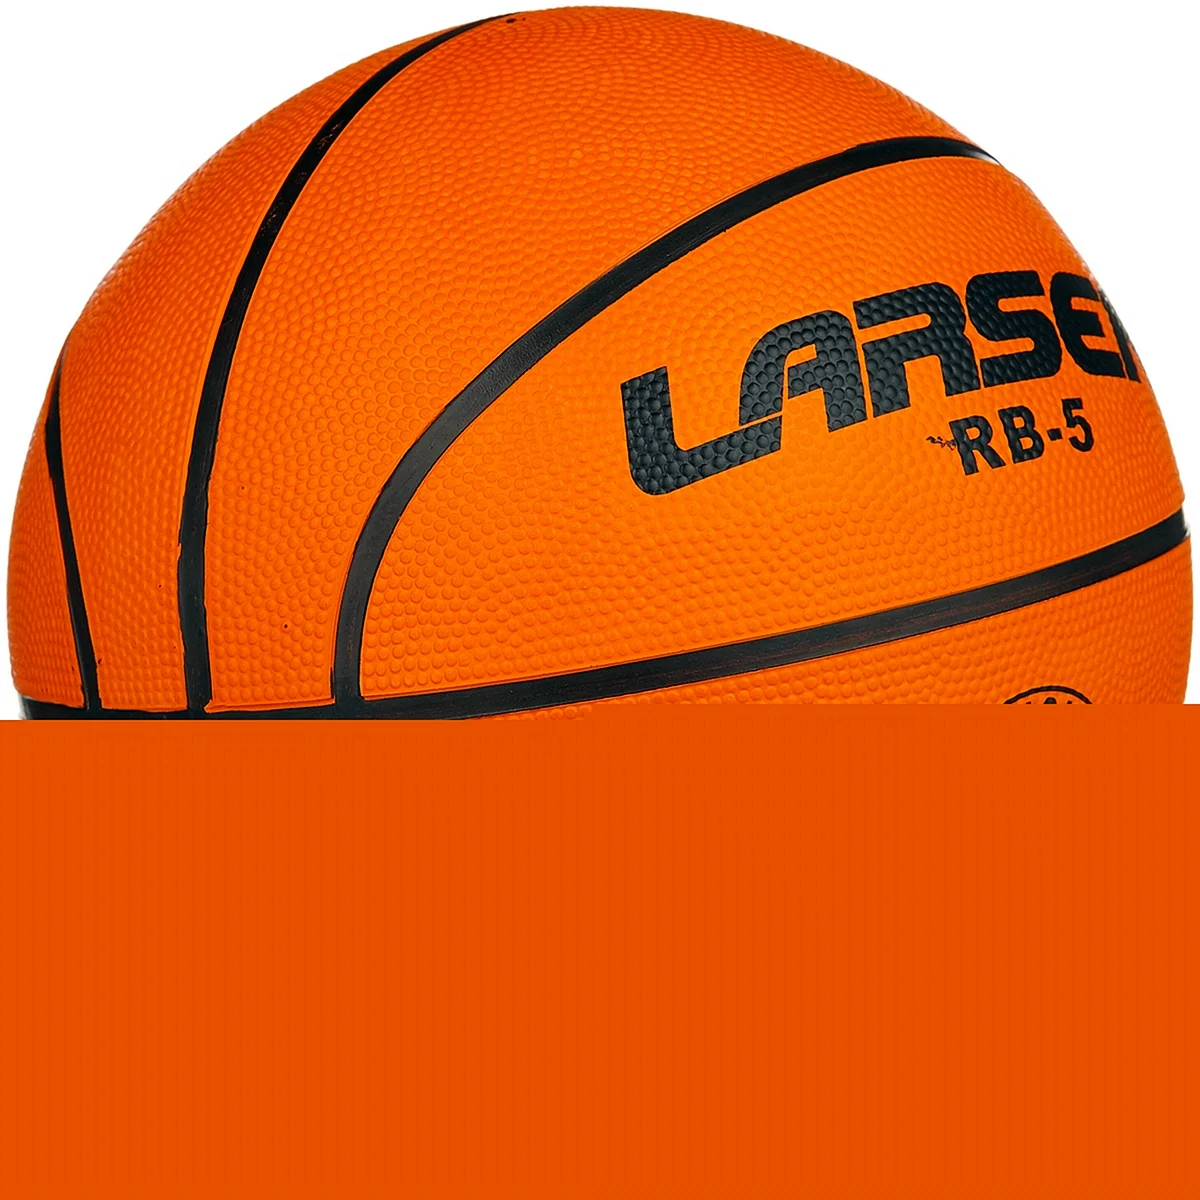 Мяч баскетбольный Larsen rb3